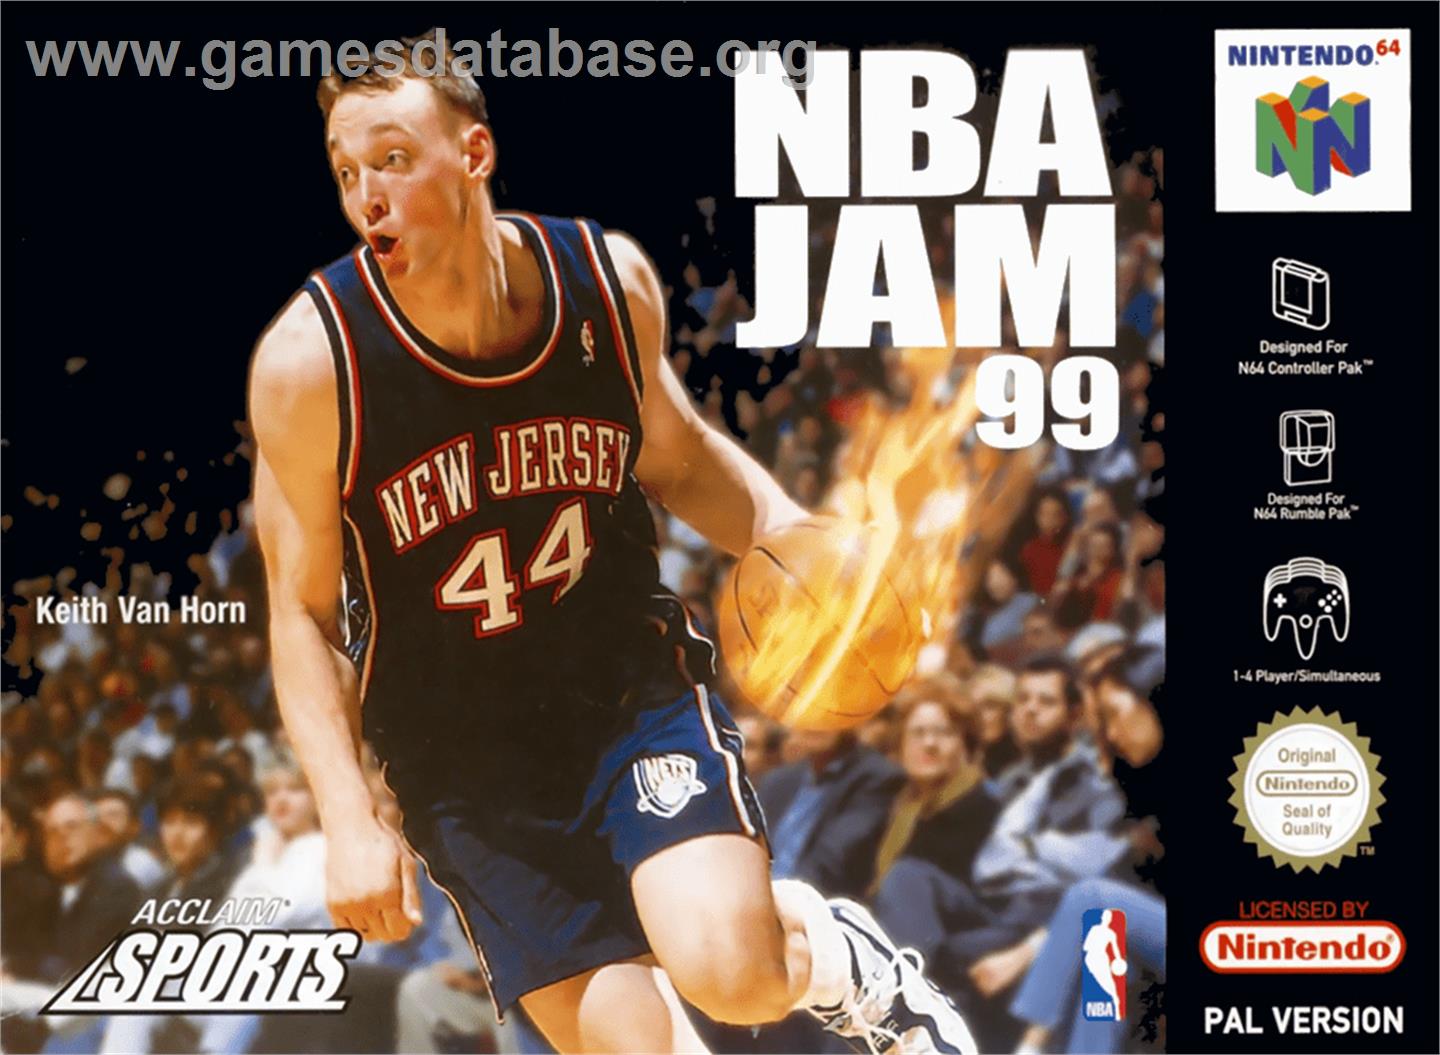 NBA Jam 99 - Nintendo N64 - Artwork - Box